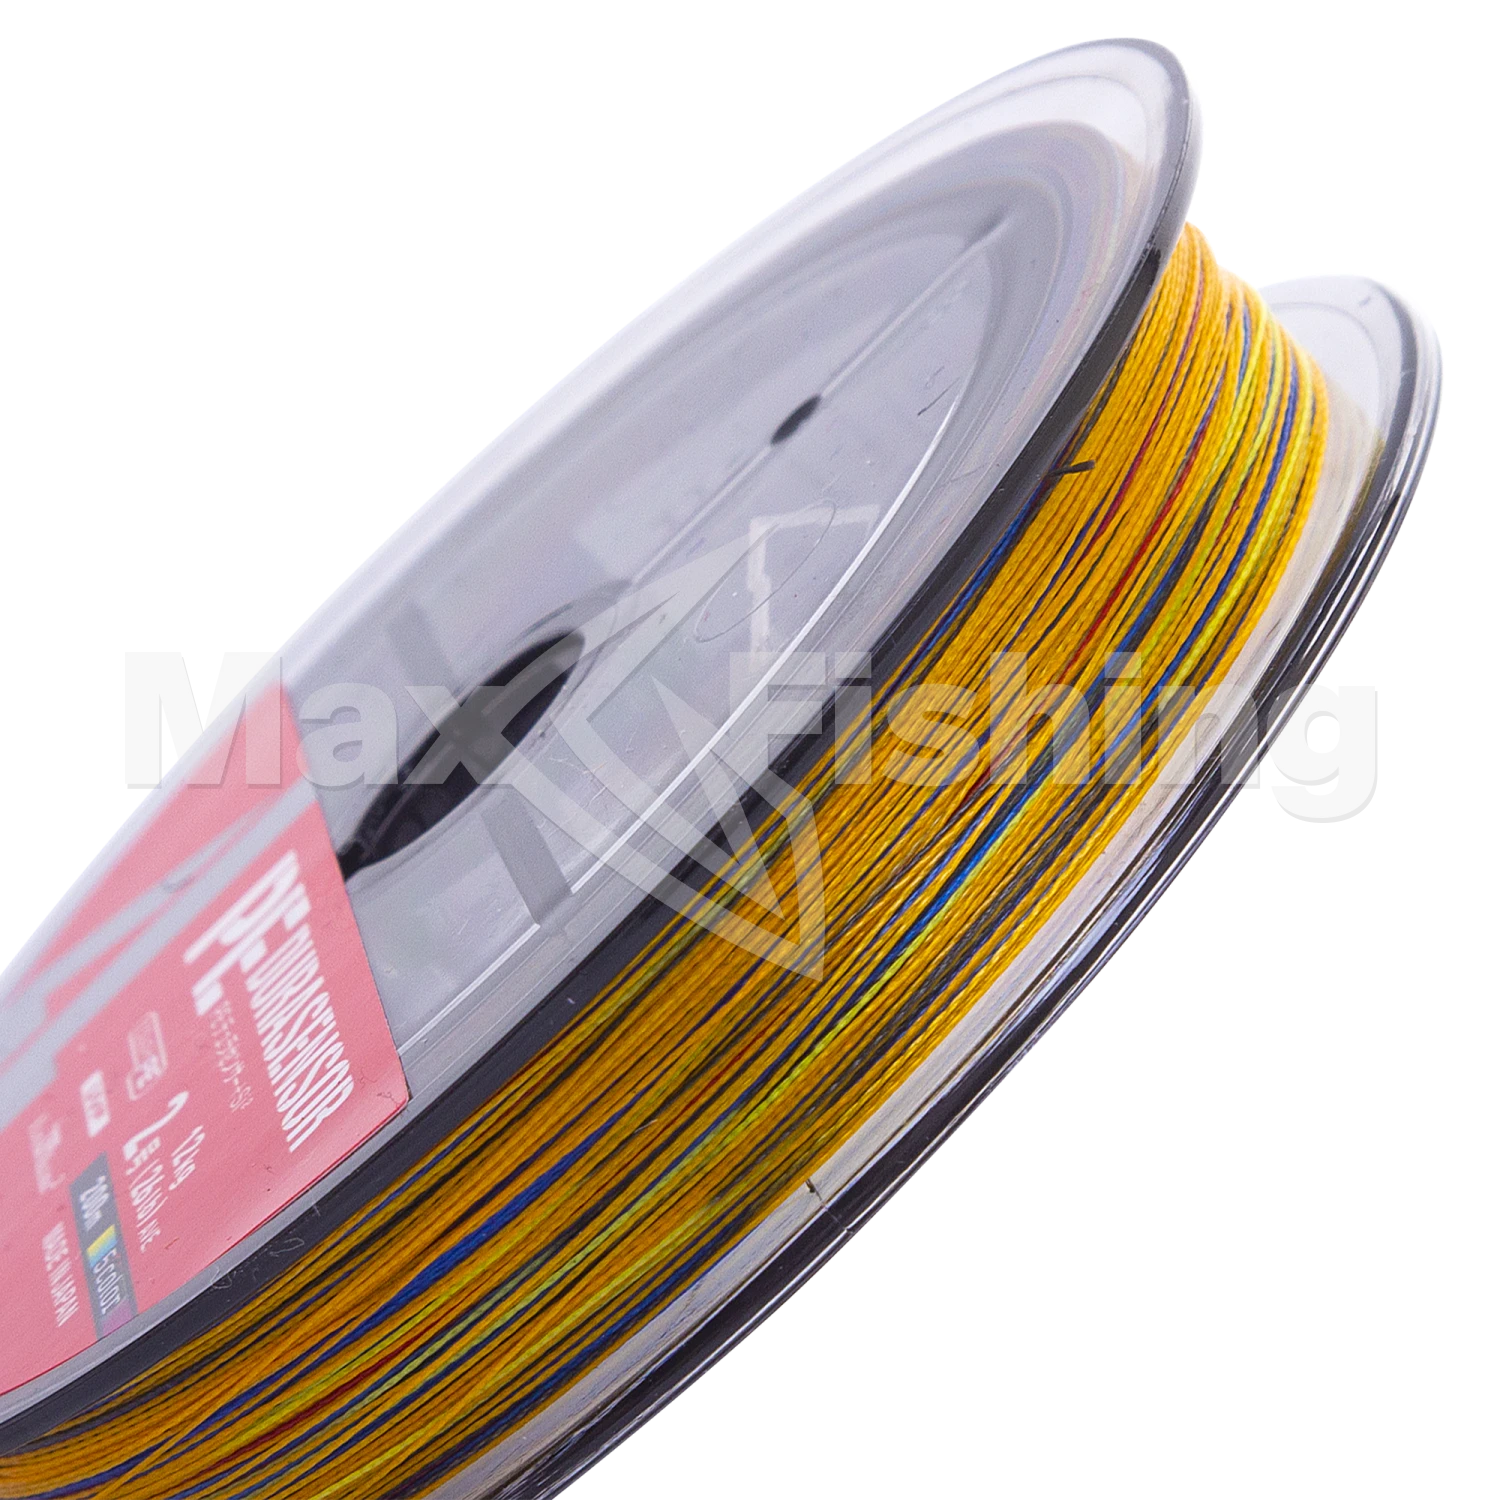 Шнур плетеный Daiwa UVF PE DuraSensor X4 +Si2 #2,0 0,235мм 200м (5color)